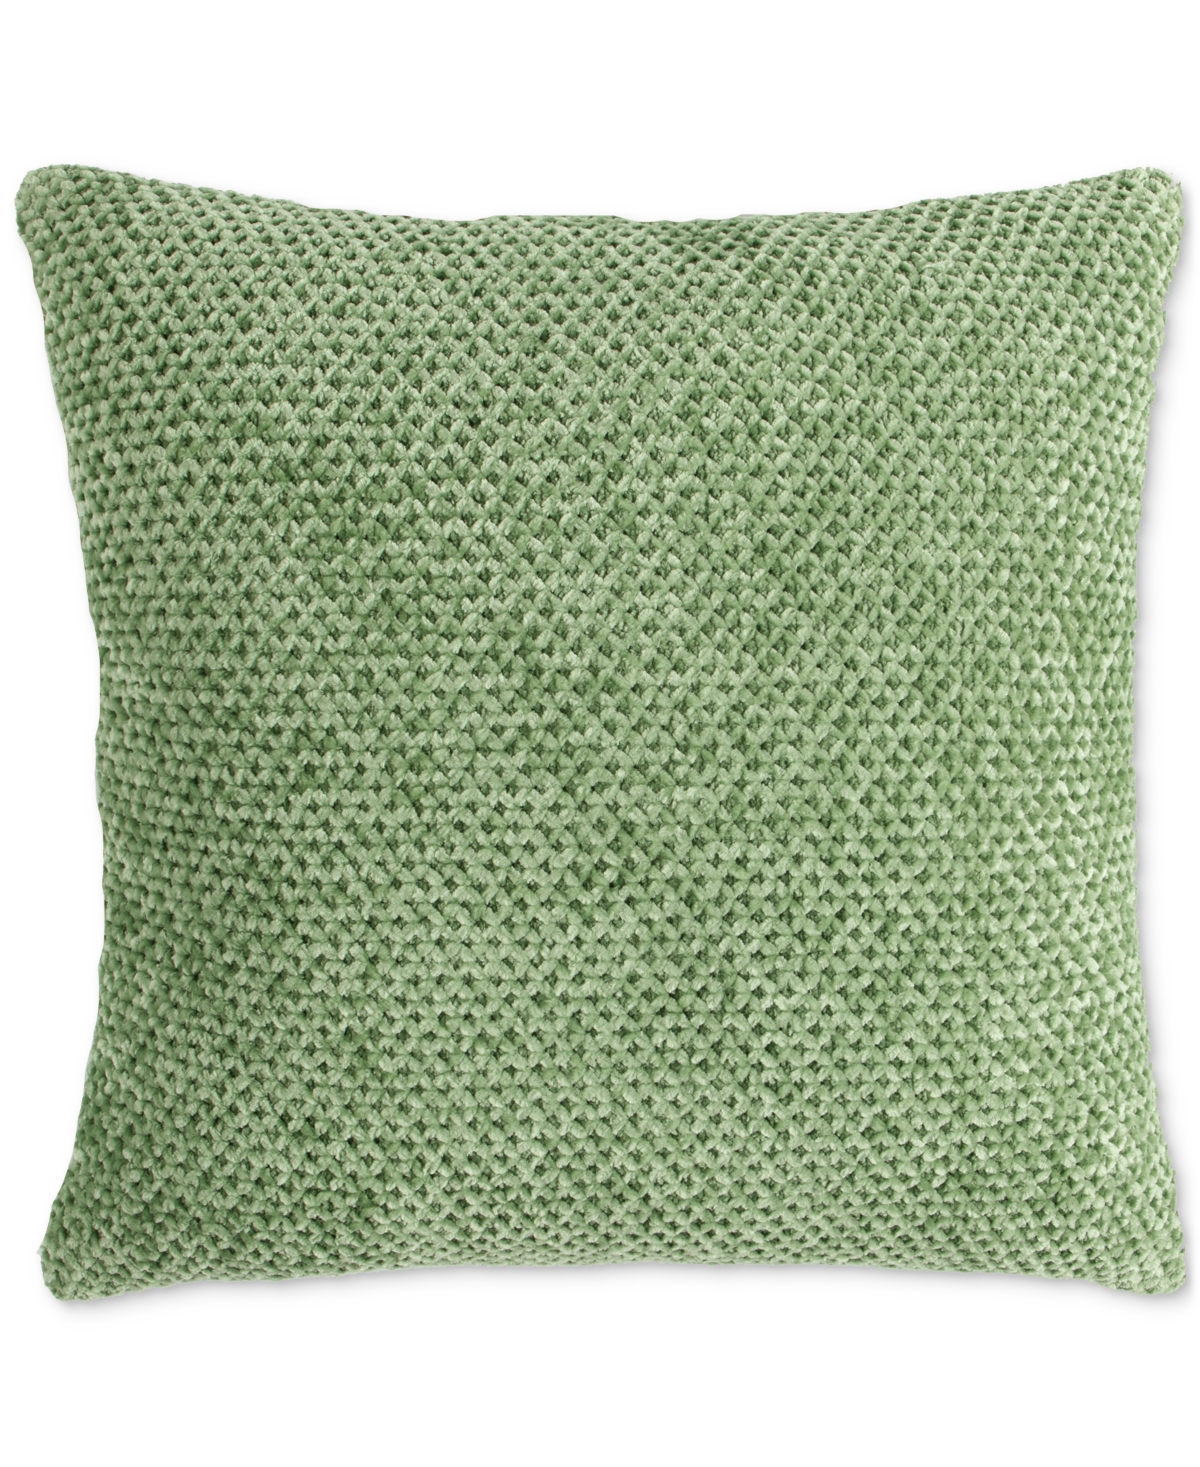 Lush Decor Braided Decorative Pillow, 18" X 18" In Fair Green